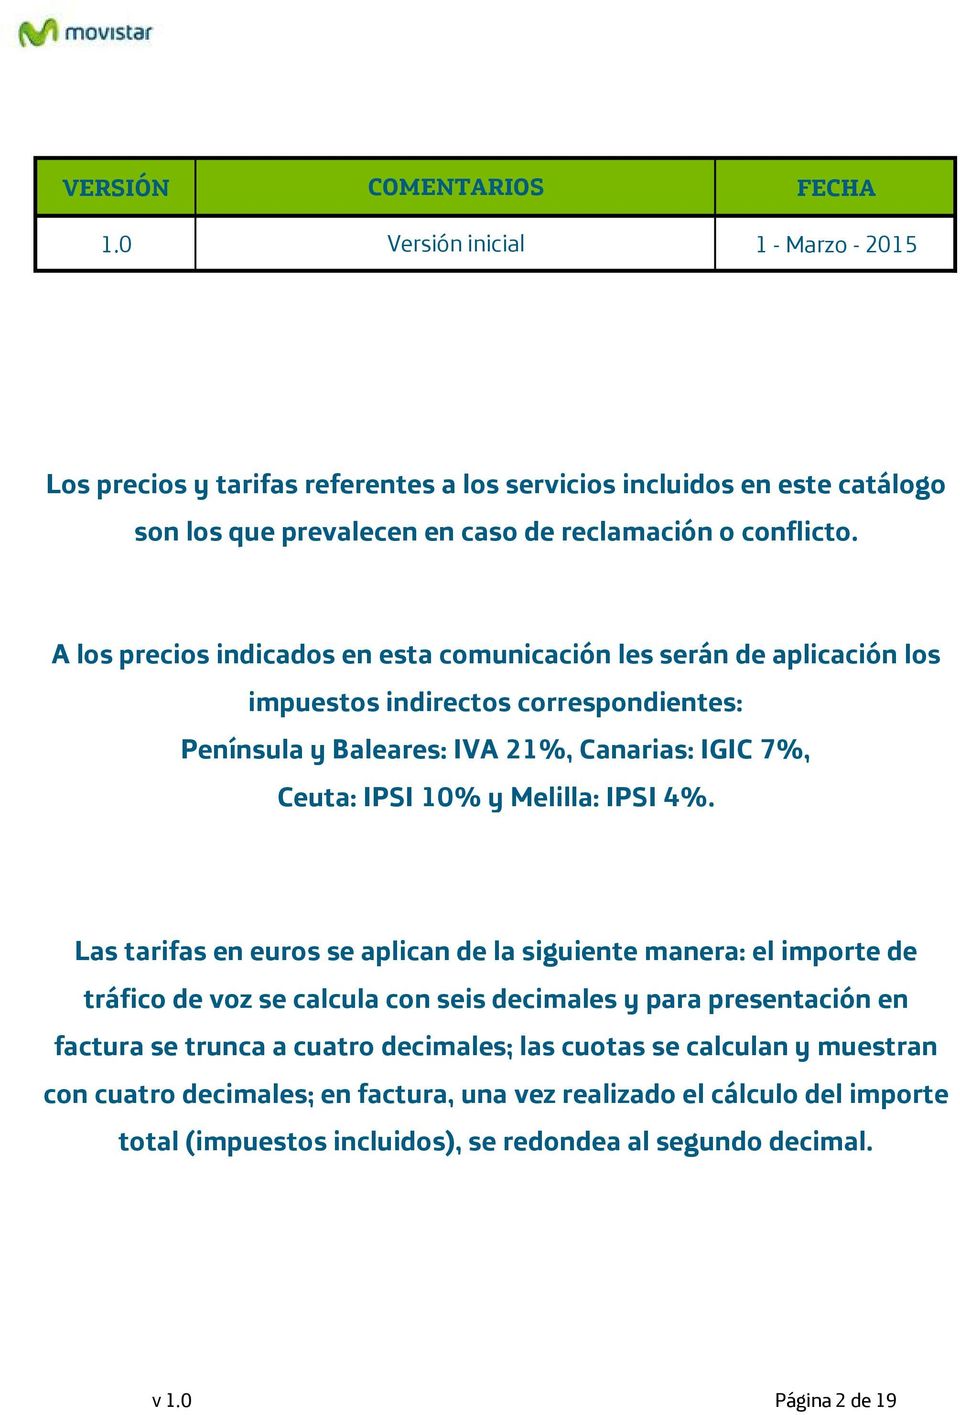 A los precios indicados en esta comunicación les serán de aplicación los impuestos indirectos correspondientes: Península y Baleares: IVA 21%, Canarias: IGIC 7%, Ceuta: IPSI 10% y Melilla: